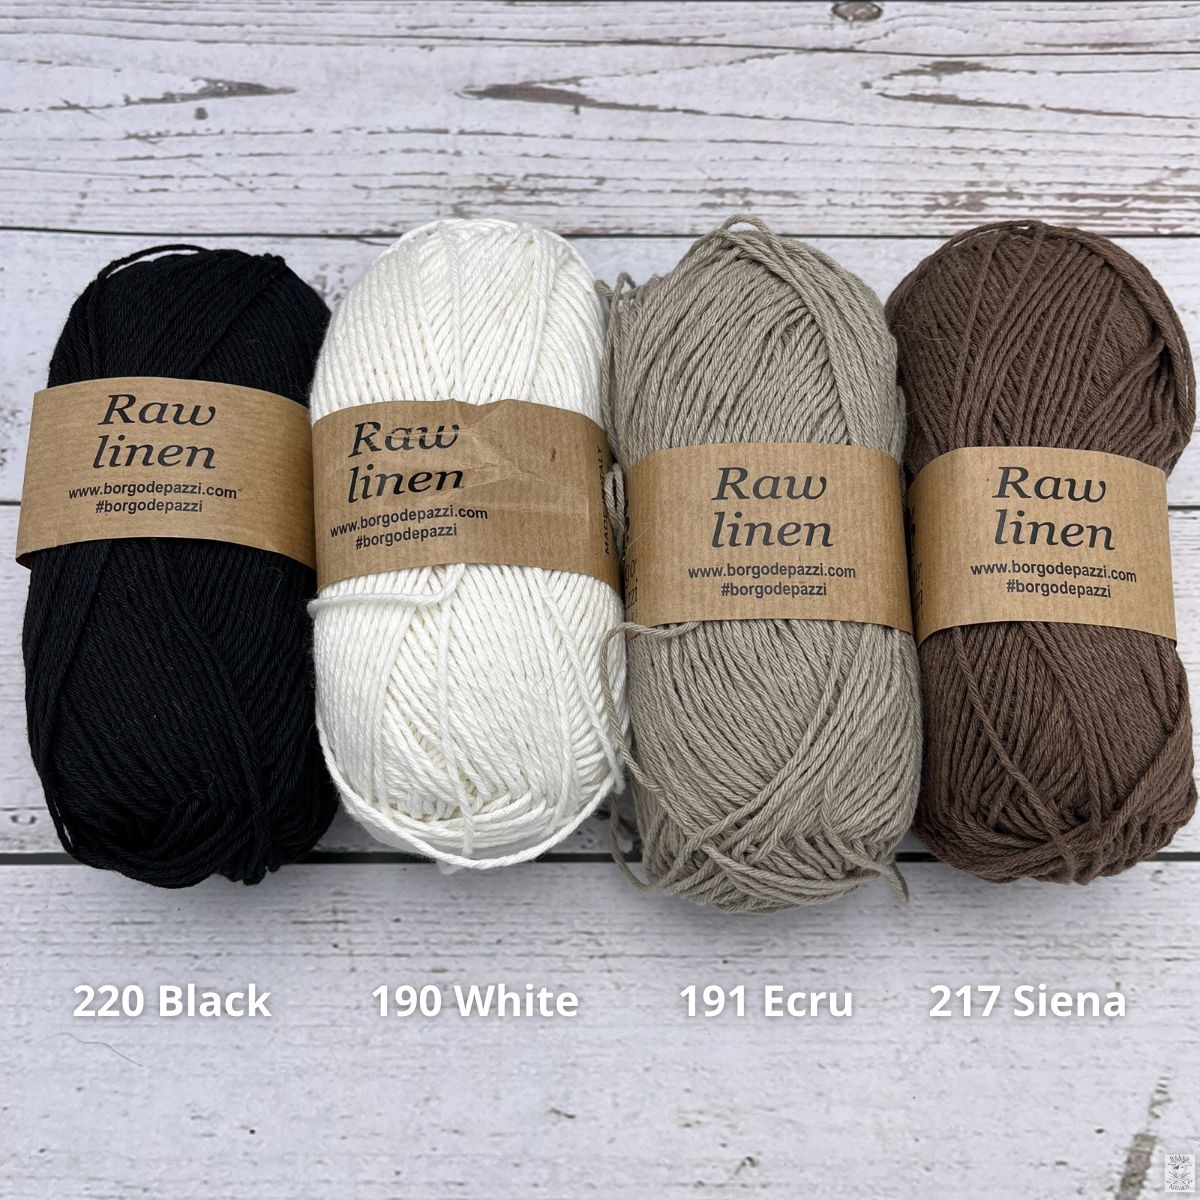 Raw Linen - Baaad Anna's Yarn Store